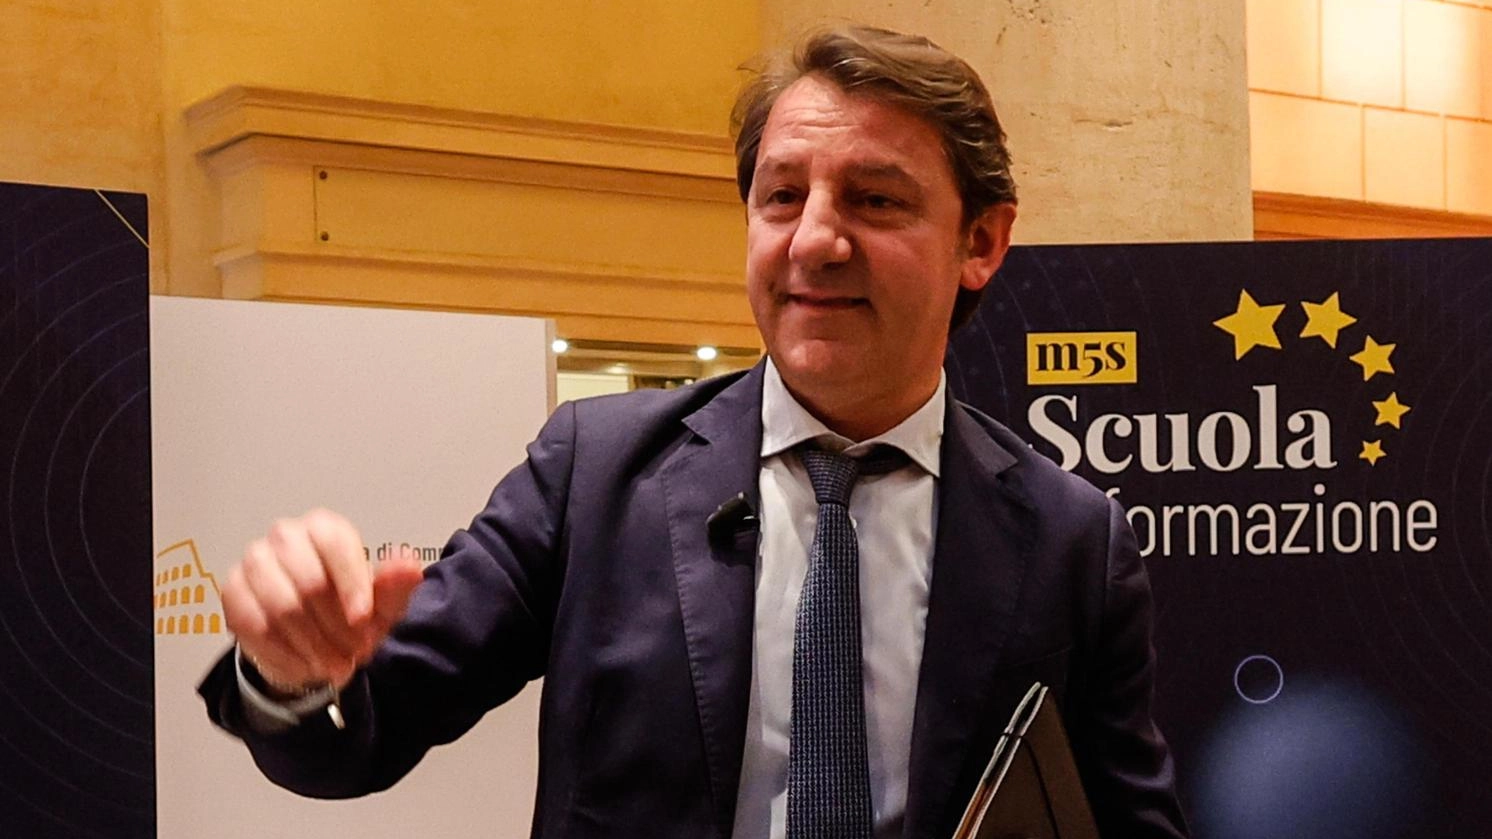 Il M5S critica von der Leyen per la scelta del commissario alla Difesa e la mancanza di focus sull'economia e la povertà. Dubbi sul Green Deal e il Patto di Stabilità. Proposta di reddito di cittadinanza europeo per contrastare la disuguaglianza. Critiche a Renzi per incoerenza politica.